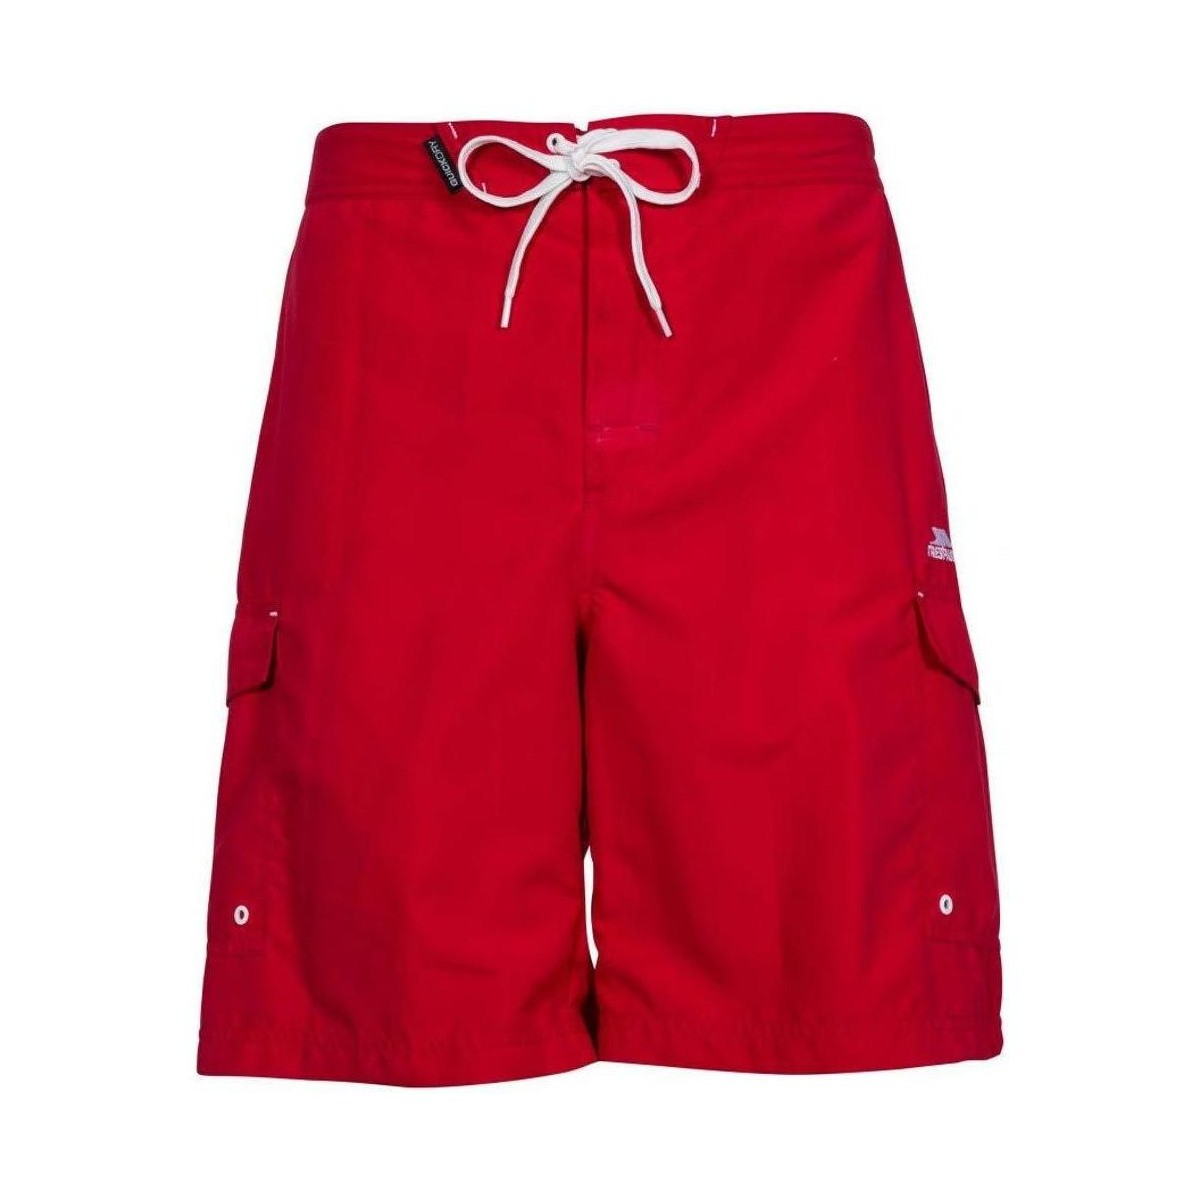 Abbigliamento Uomo Shorts / Bermuda Trespass Crucifer Surf Rosso